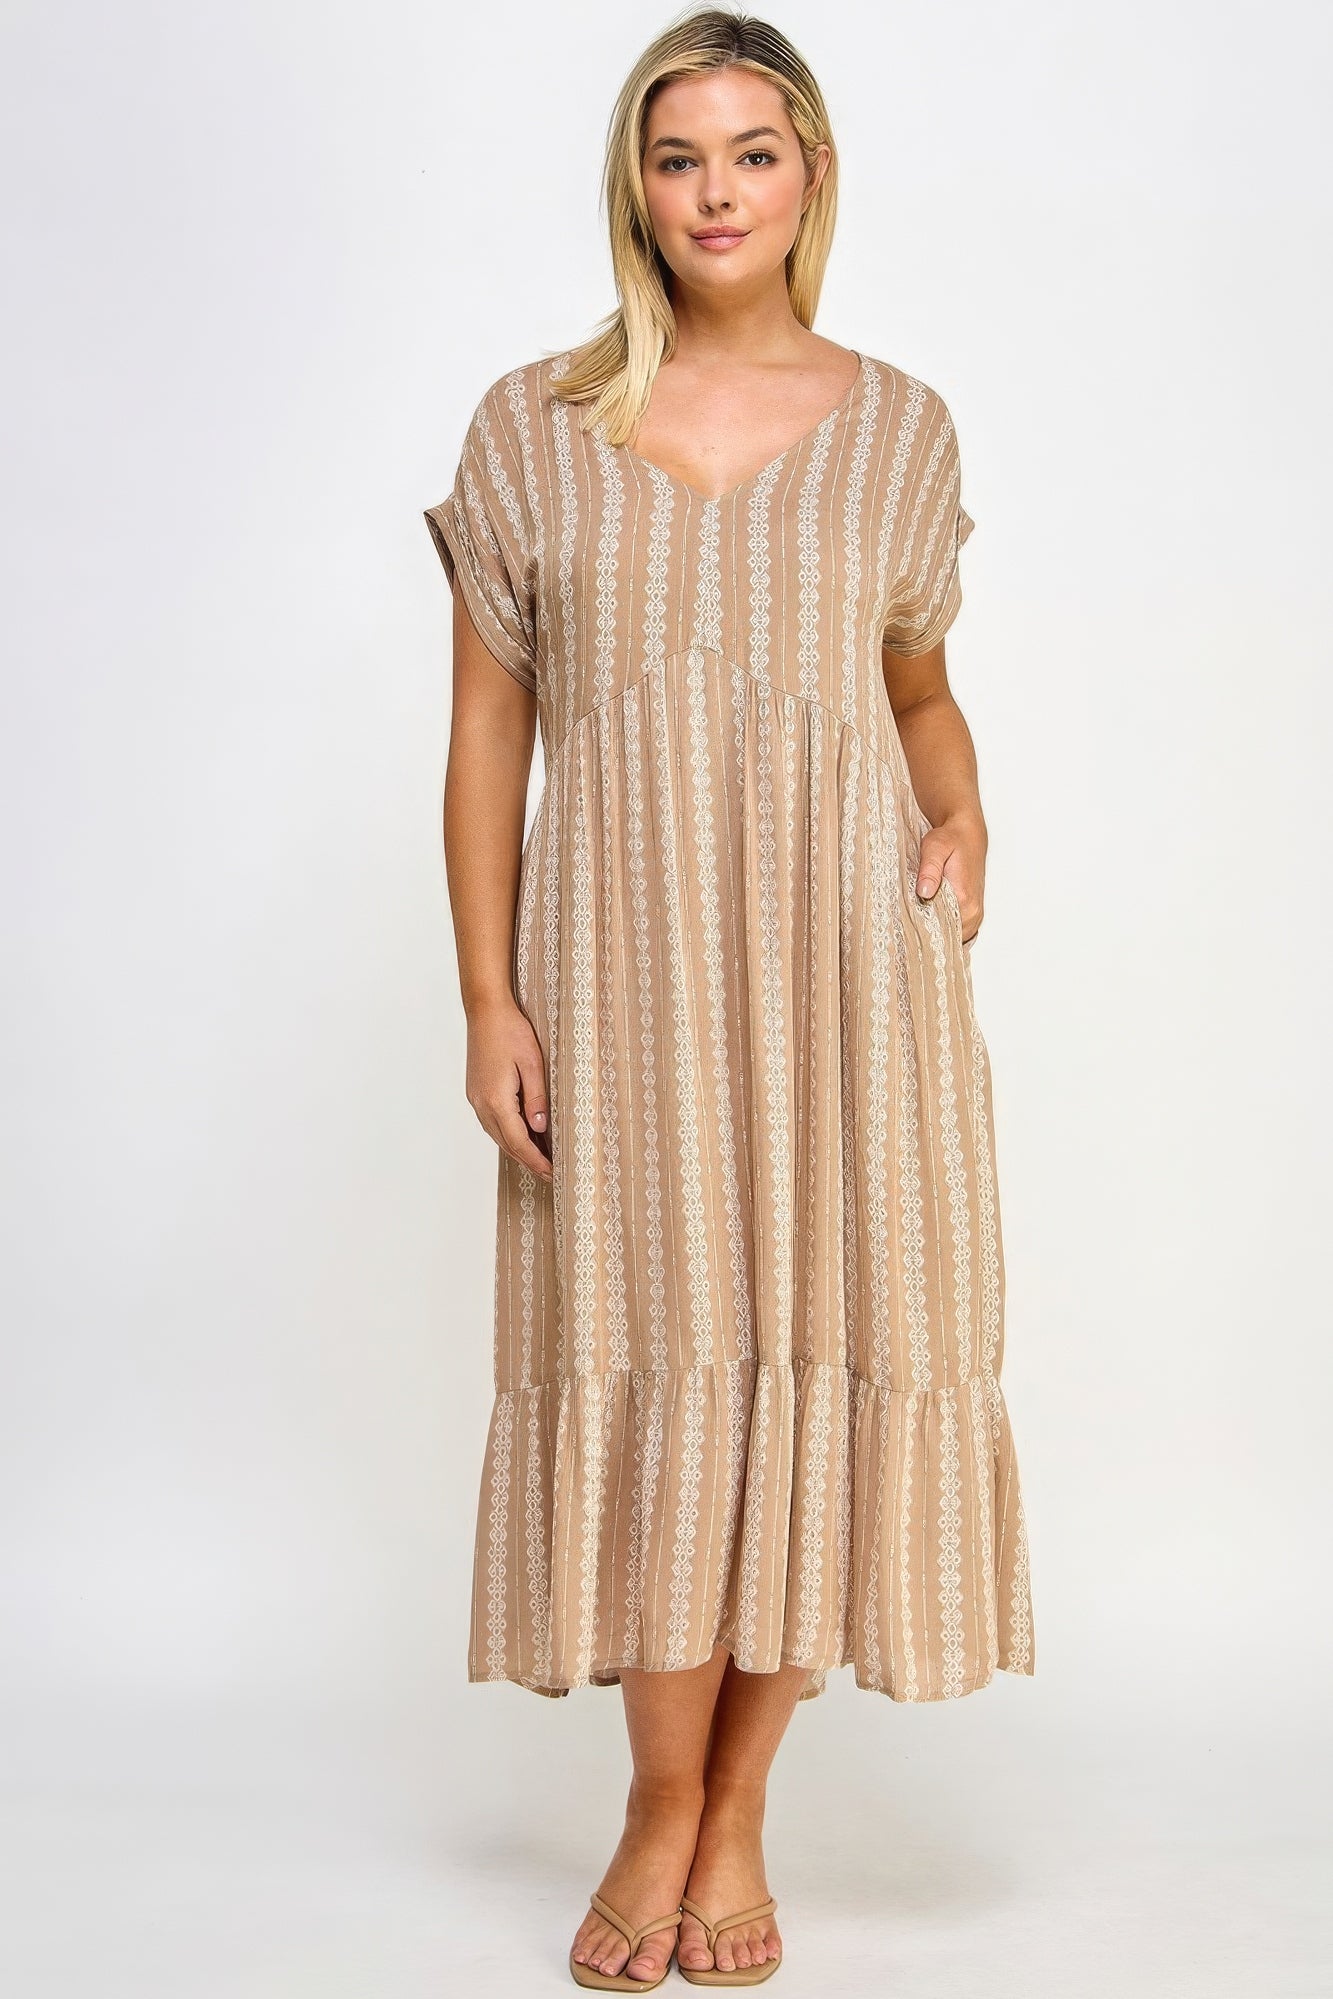 Voluptuous (+) Boho Maxi Dress W/ Slip for Plus Size Women